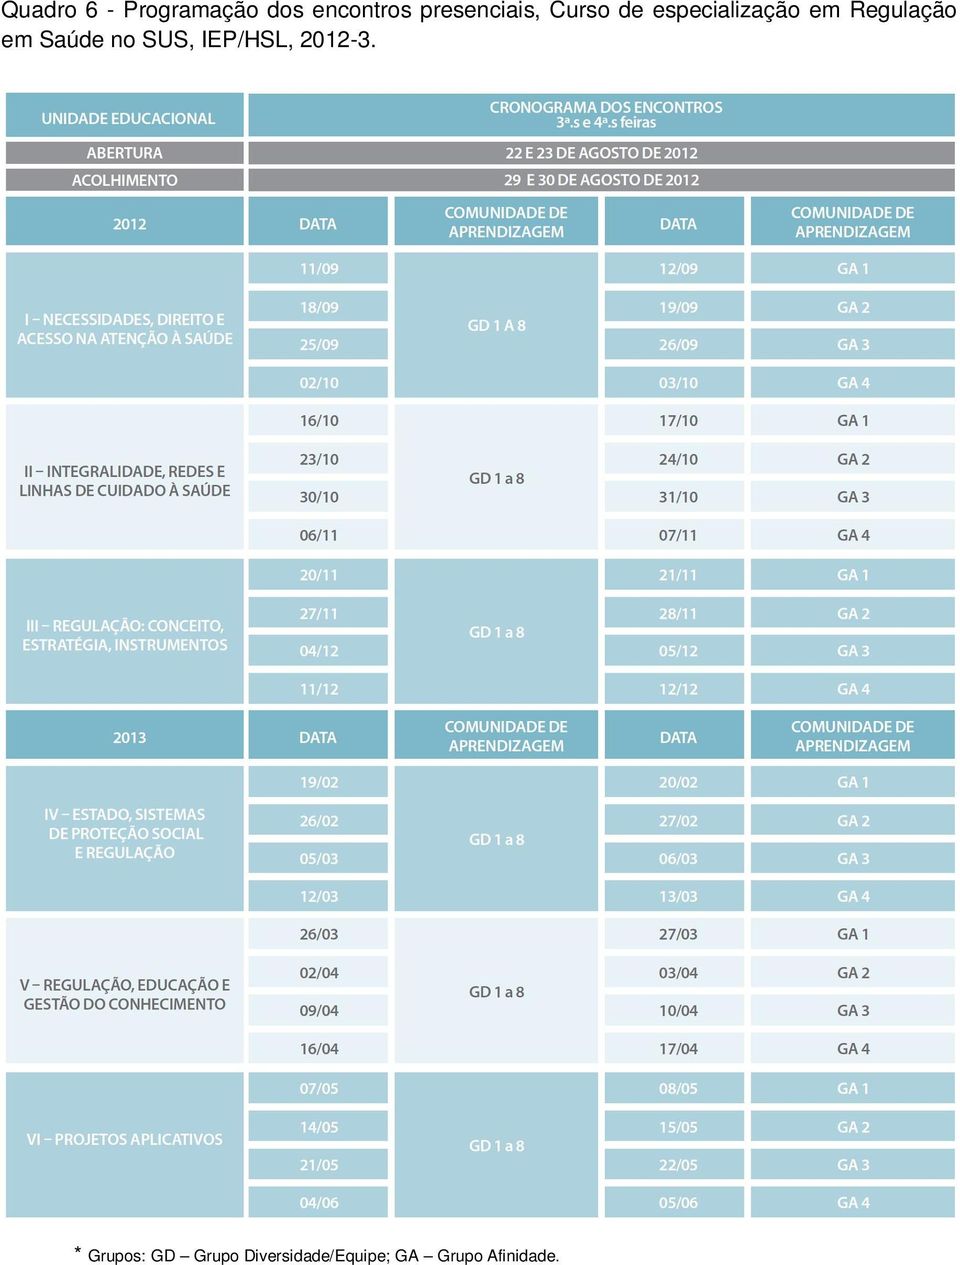 Regulação em Saúde no SUS, IEP/HSL, 2012-3.